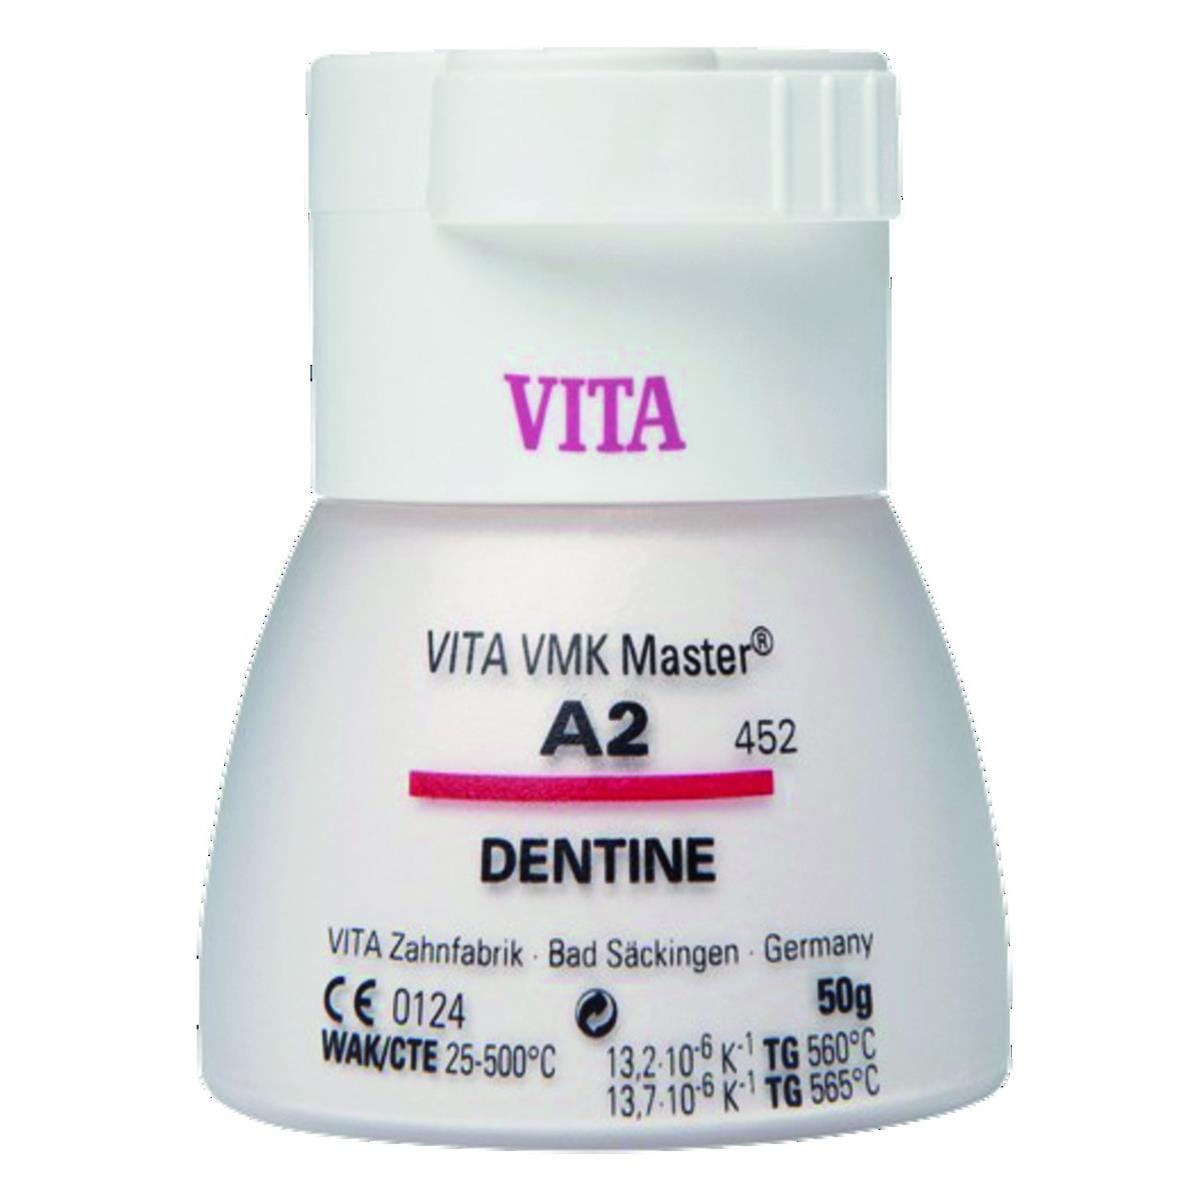 VMK Master VITA - Dentine - 2M2 - Le flacon de 50 g